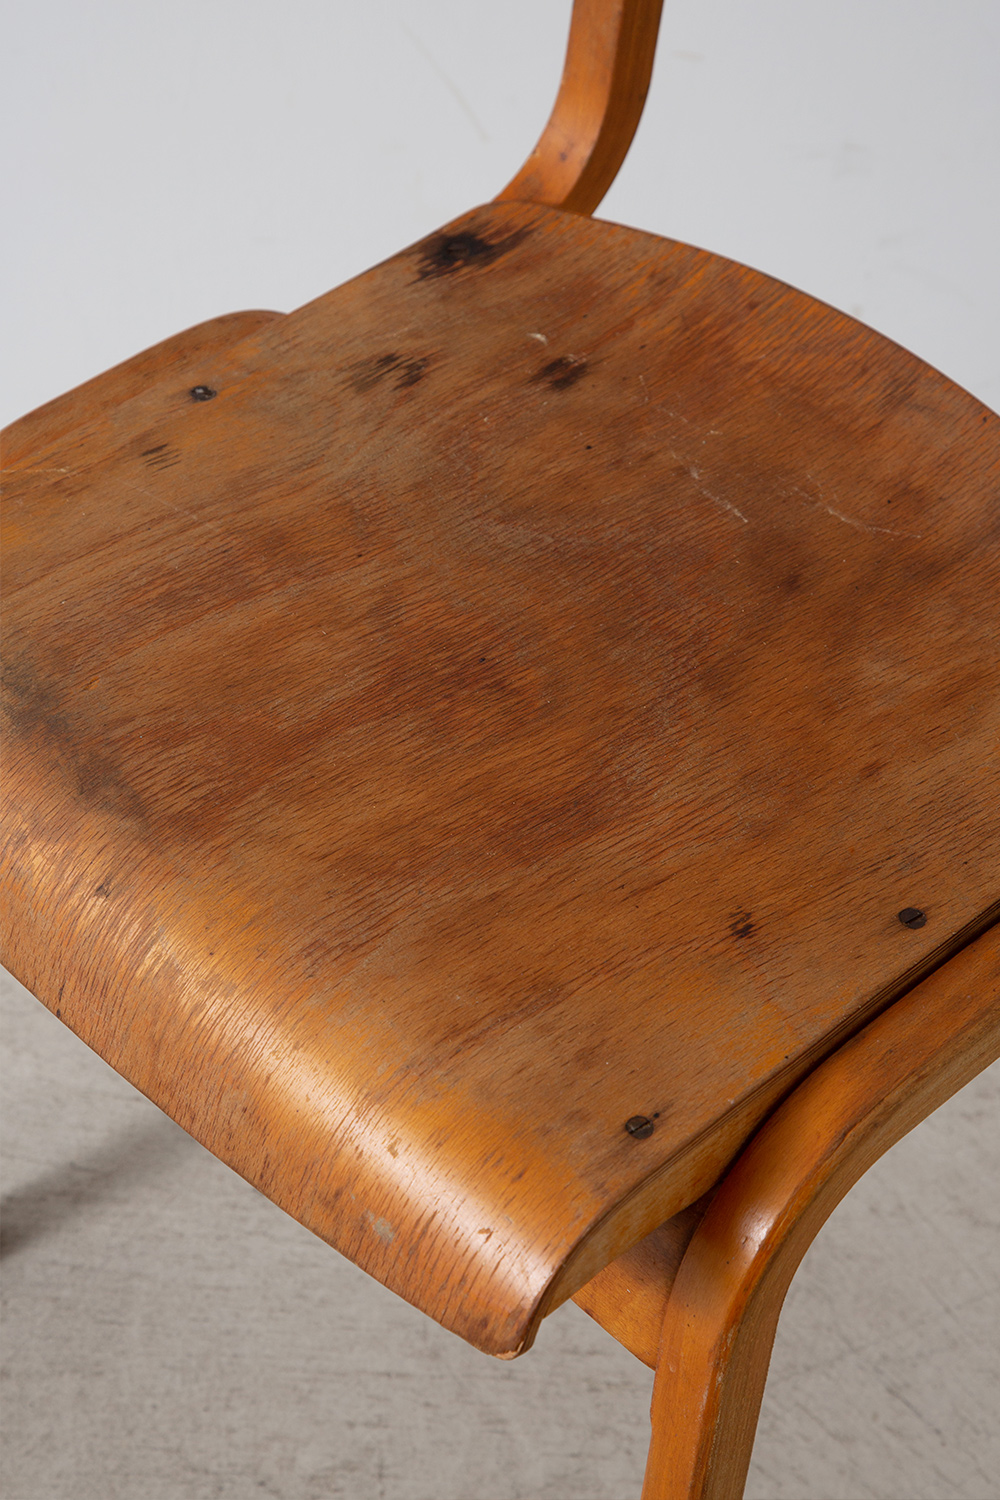 Vintage Bent Wood Chair in Wood